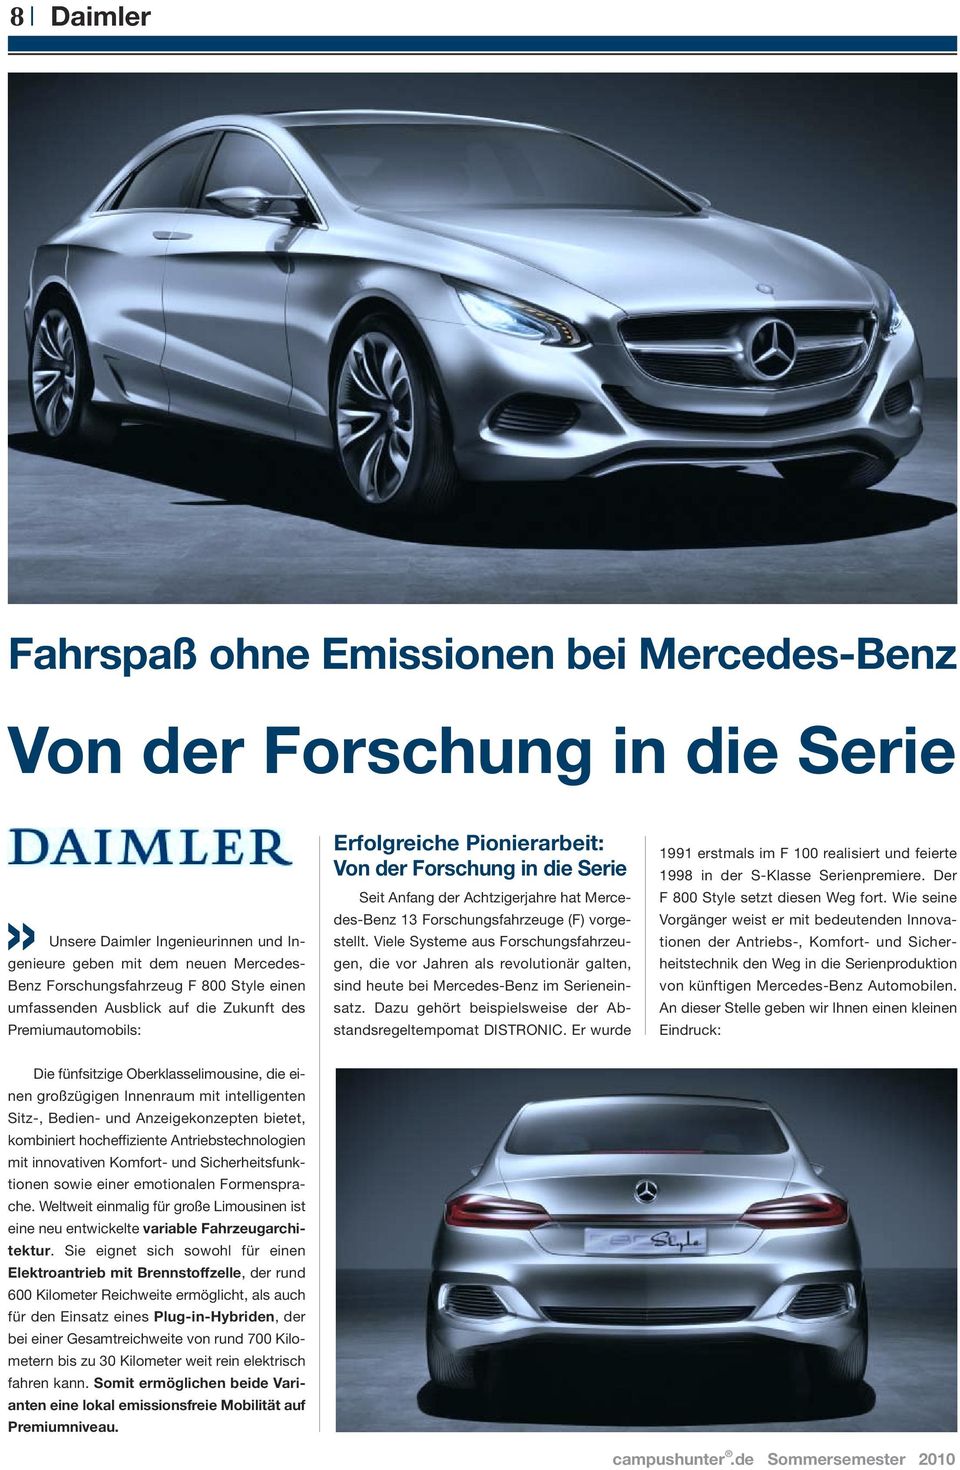 (F) vorgestellt. Viele Systeme aus Forschungsfahrzeugen, die vor Jahren als revolutionär galten, sind heute bei Mercedes-Benz im Serieneinsatz.